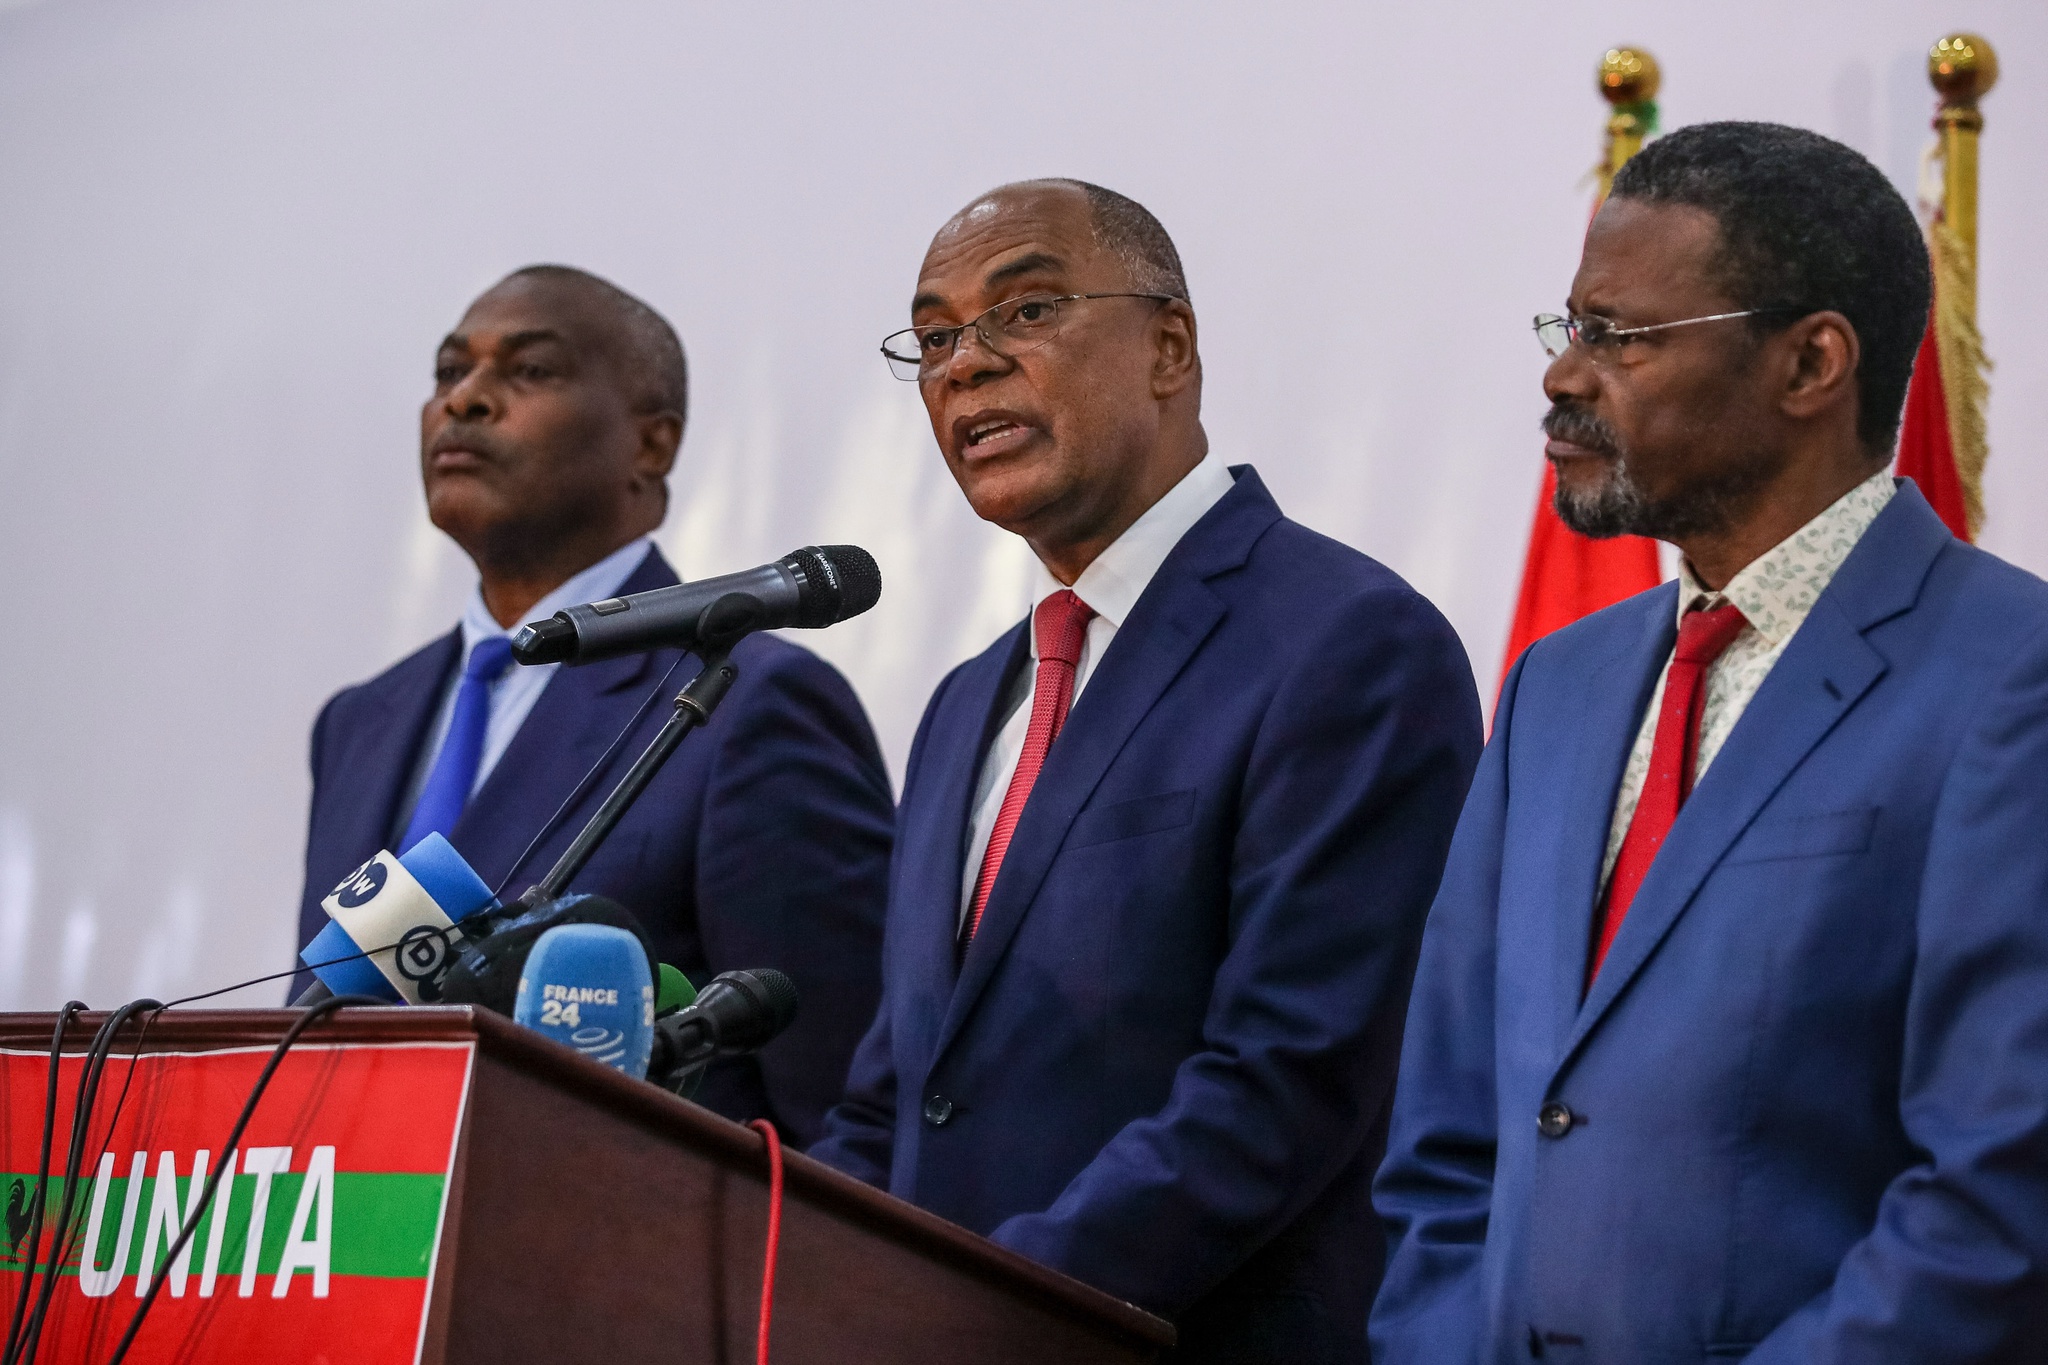 Wahlkommission erkennt „einige Änderungen“ bei den Ergebnissen in Angola an |  Wahlen in Angola 2022